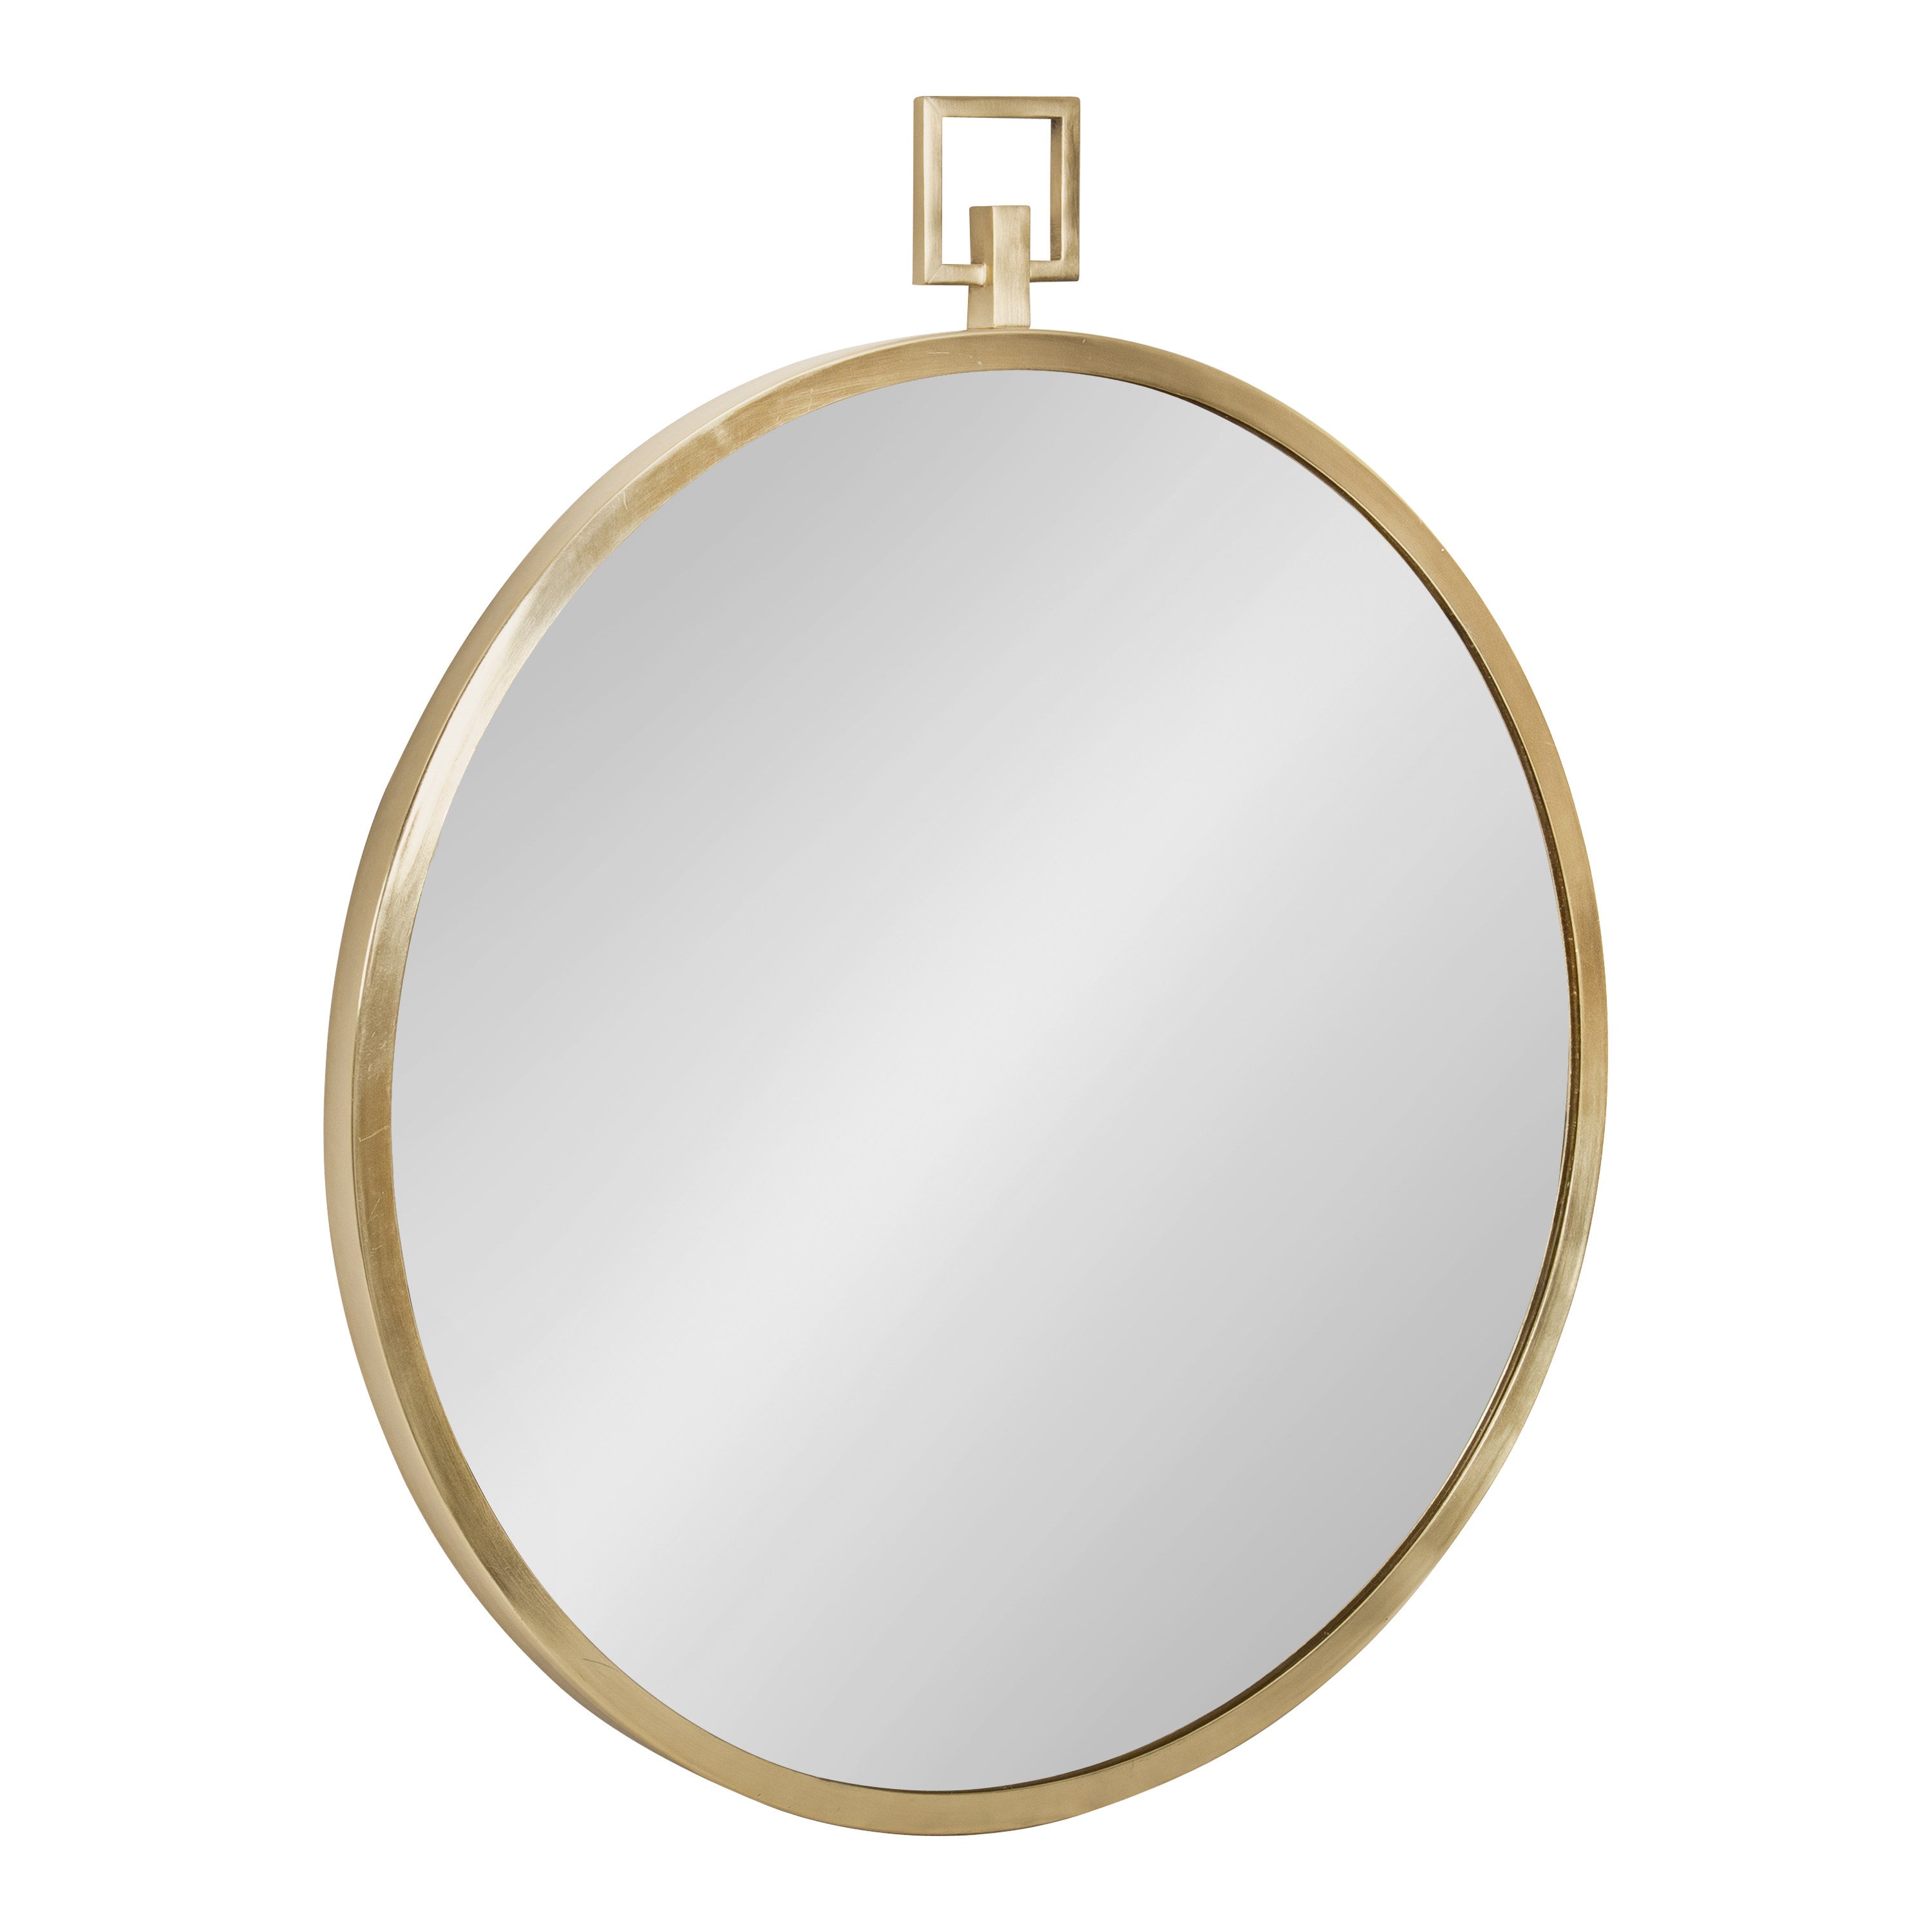 Tabb Round Framed Mirror